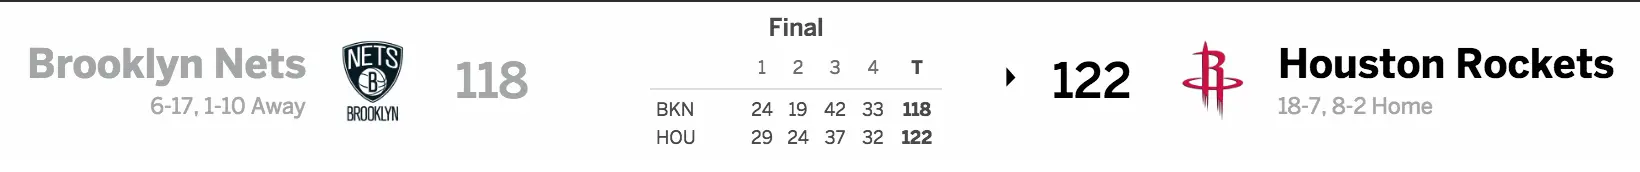 Brooklyn Nets vs. Houston Rockets 12/12/16 Score